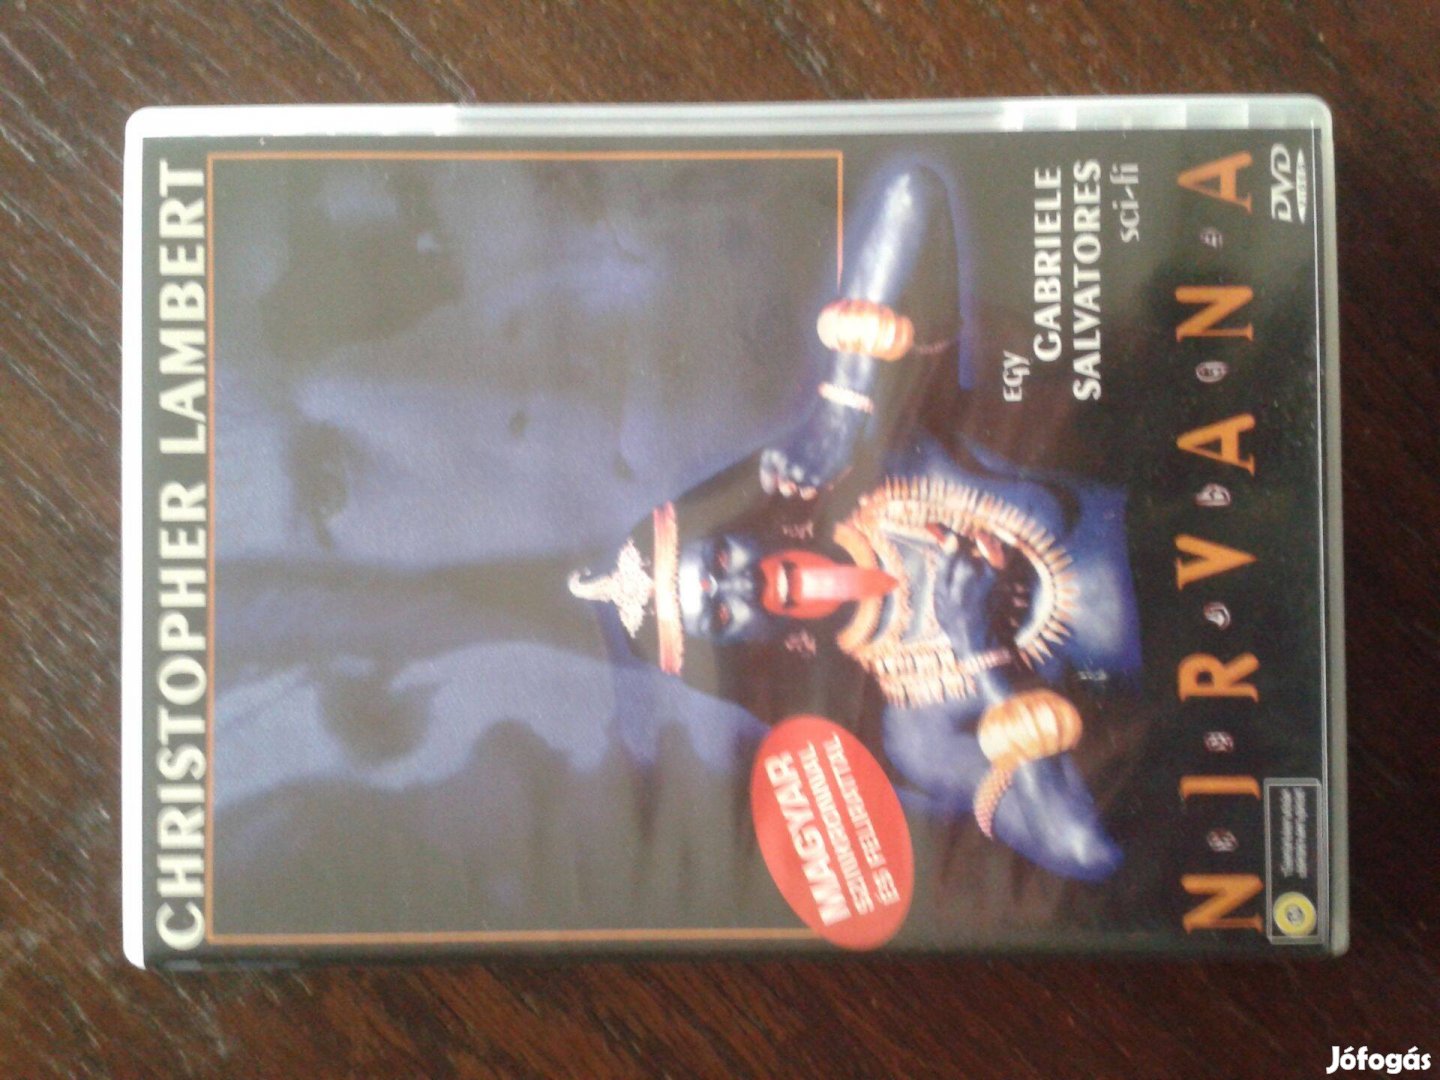 Nirvana DVD Magyar 2.0